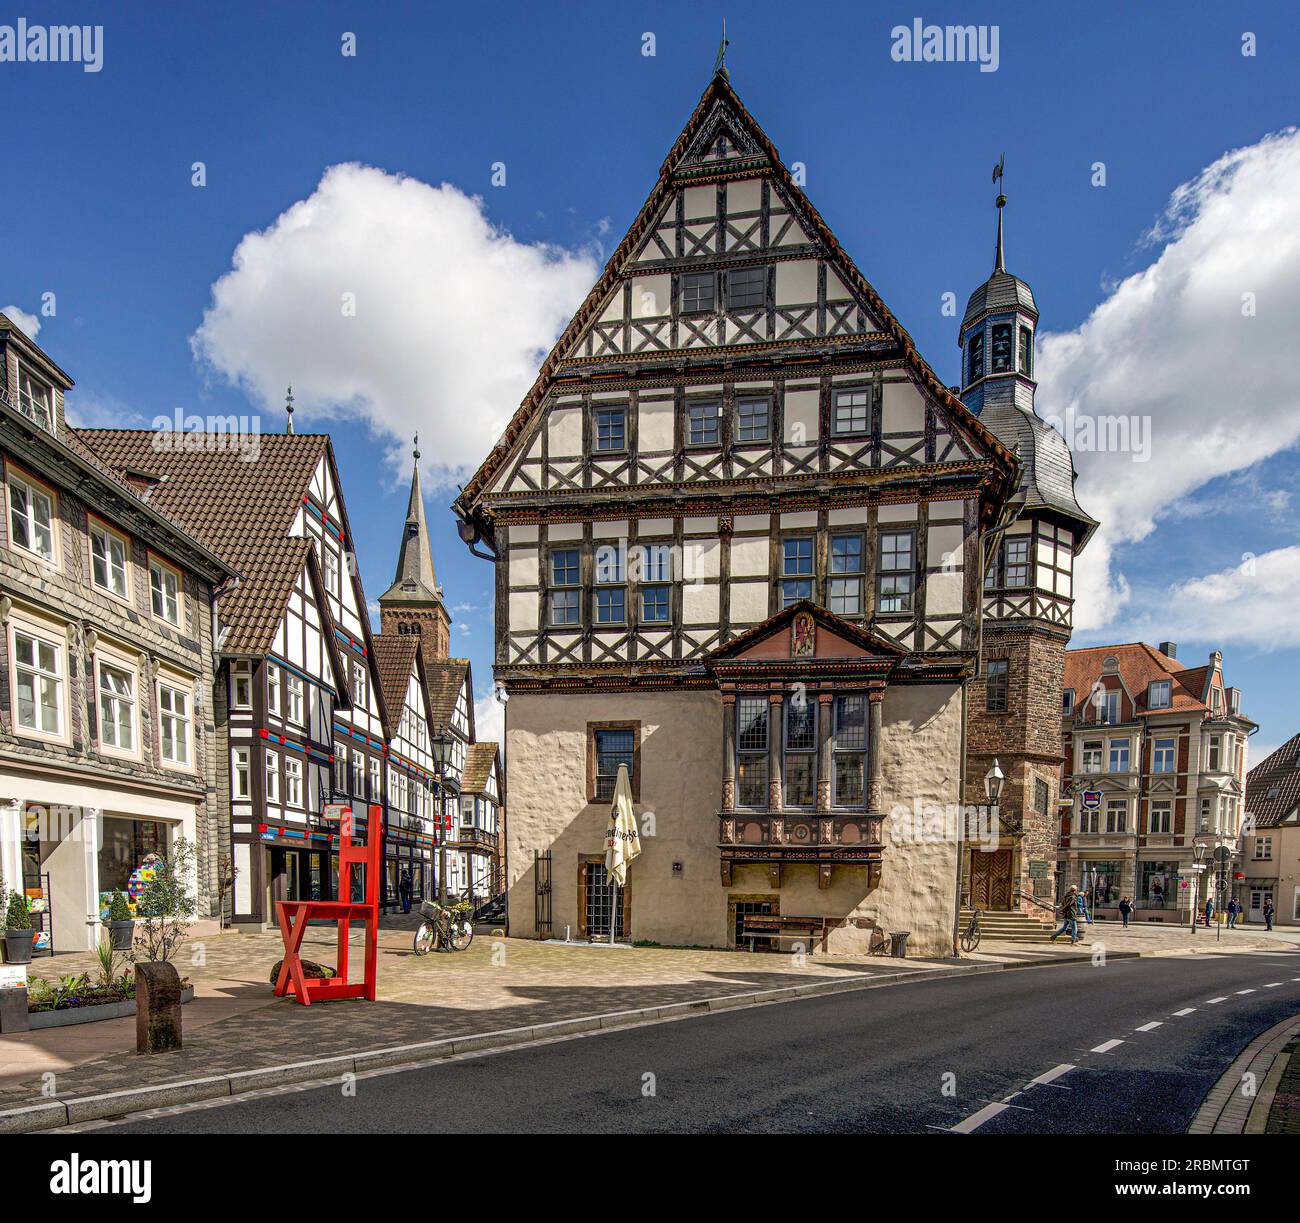 Hôtel de ville dans la vieille ville de Höxter, en arrière-plan une tour de la Kilianikirche, Höxter, Weserbergland, Rhénanie du Nord-Westphalie, Allemagne Banque D'Images